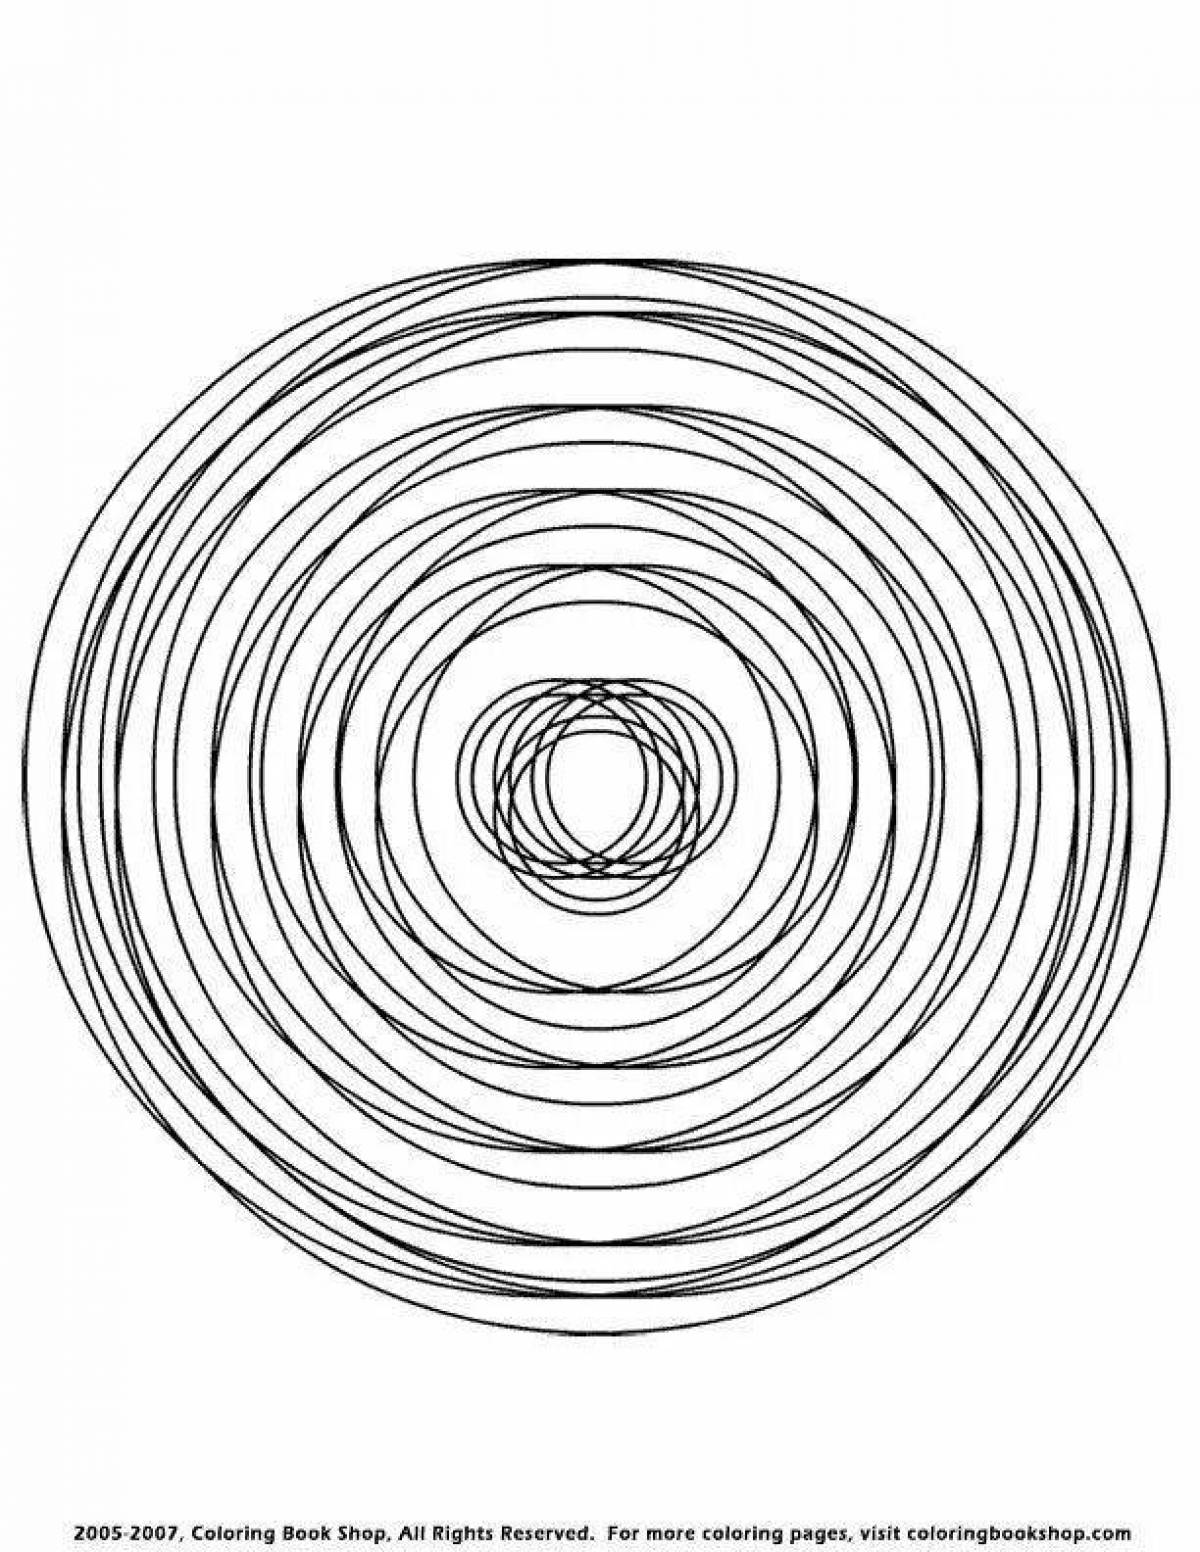 Привлекательная круглая спиральная раскраска